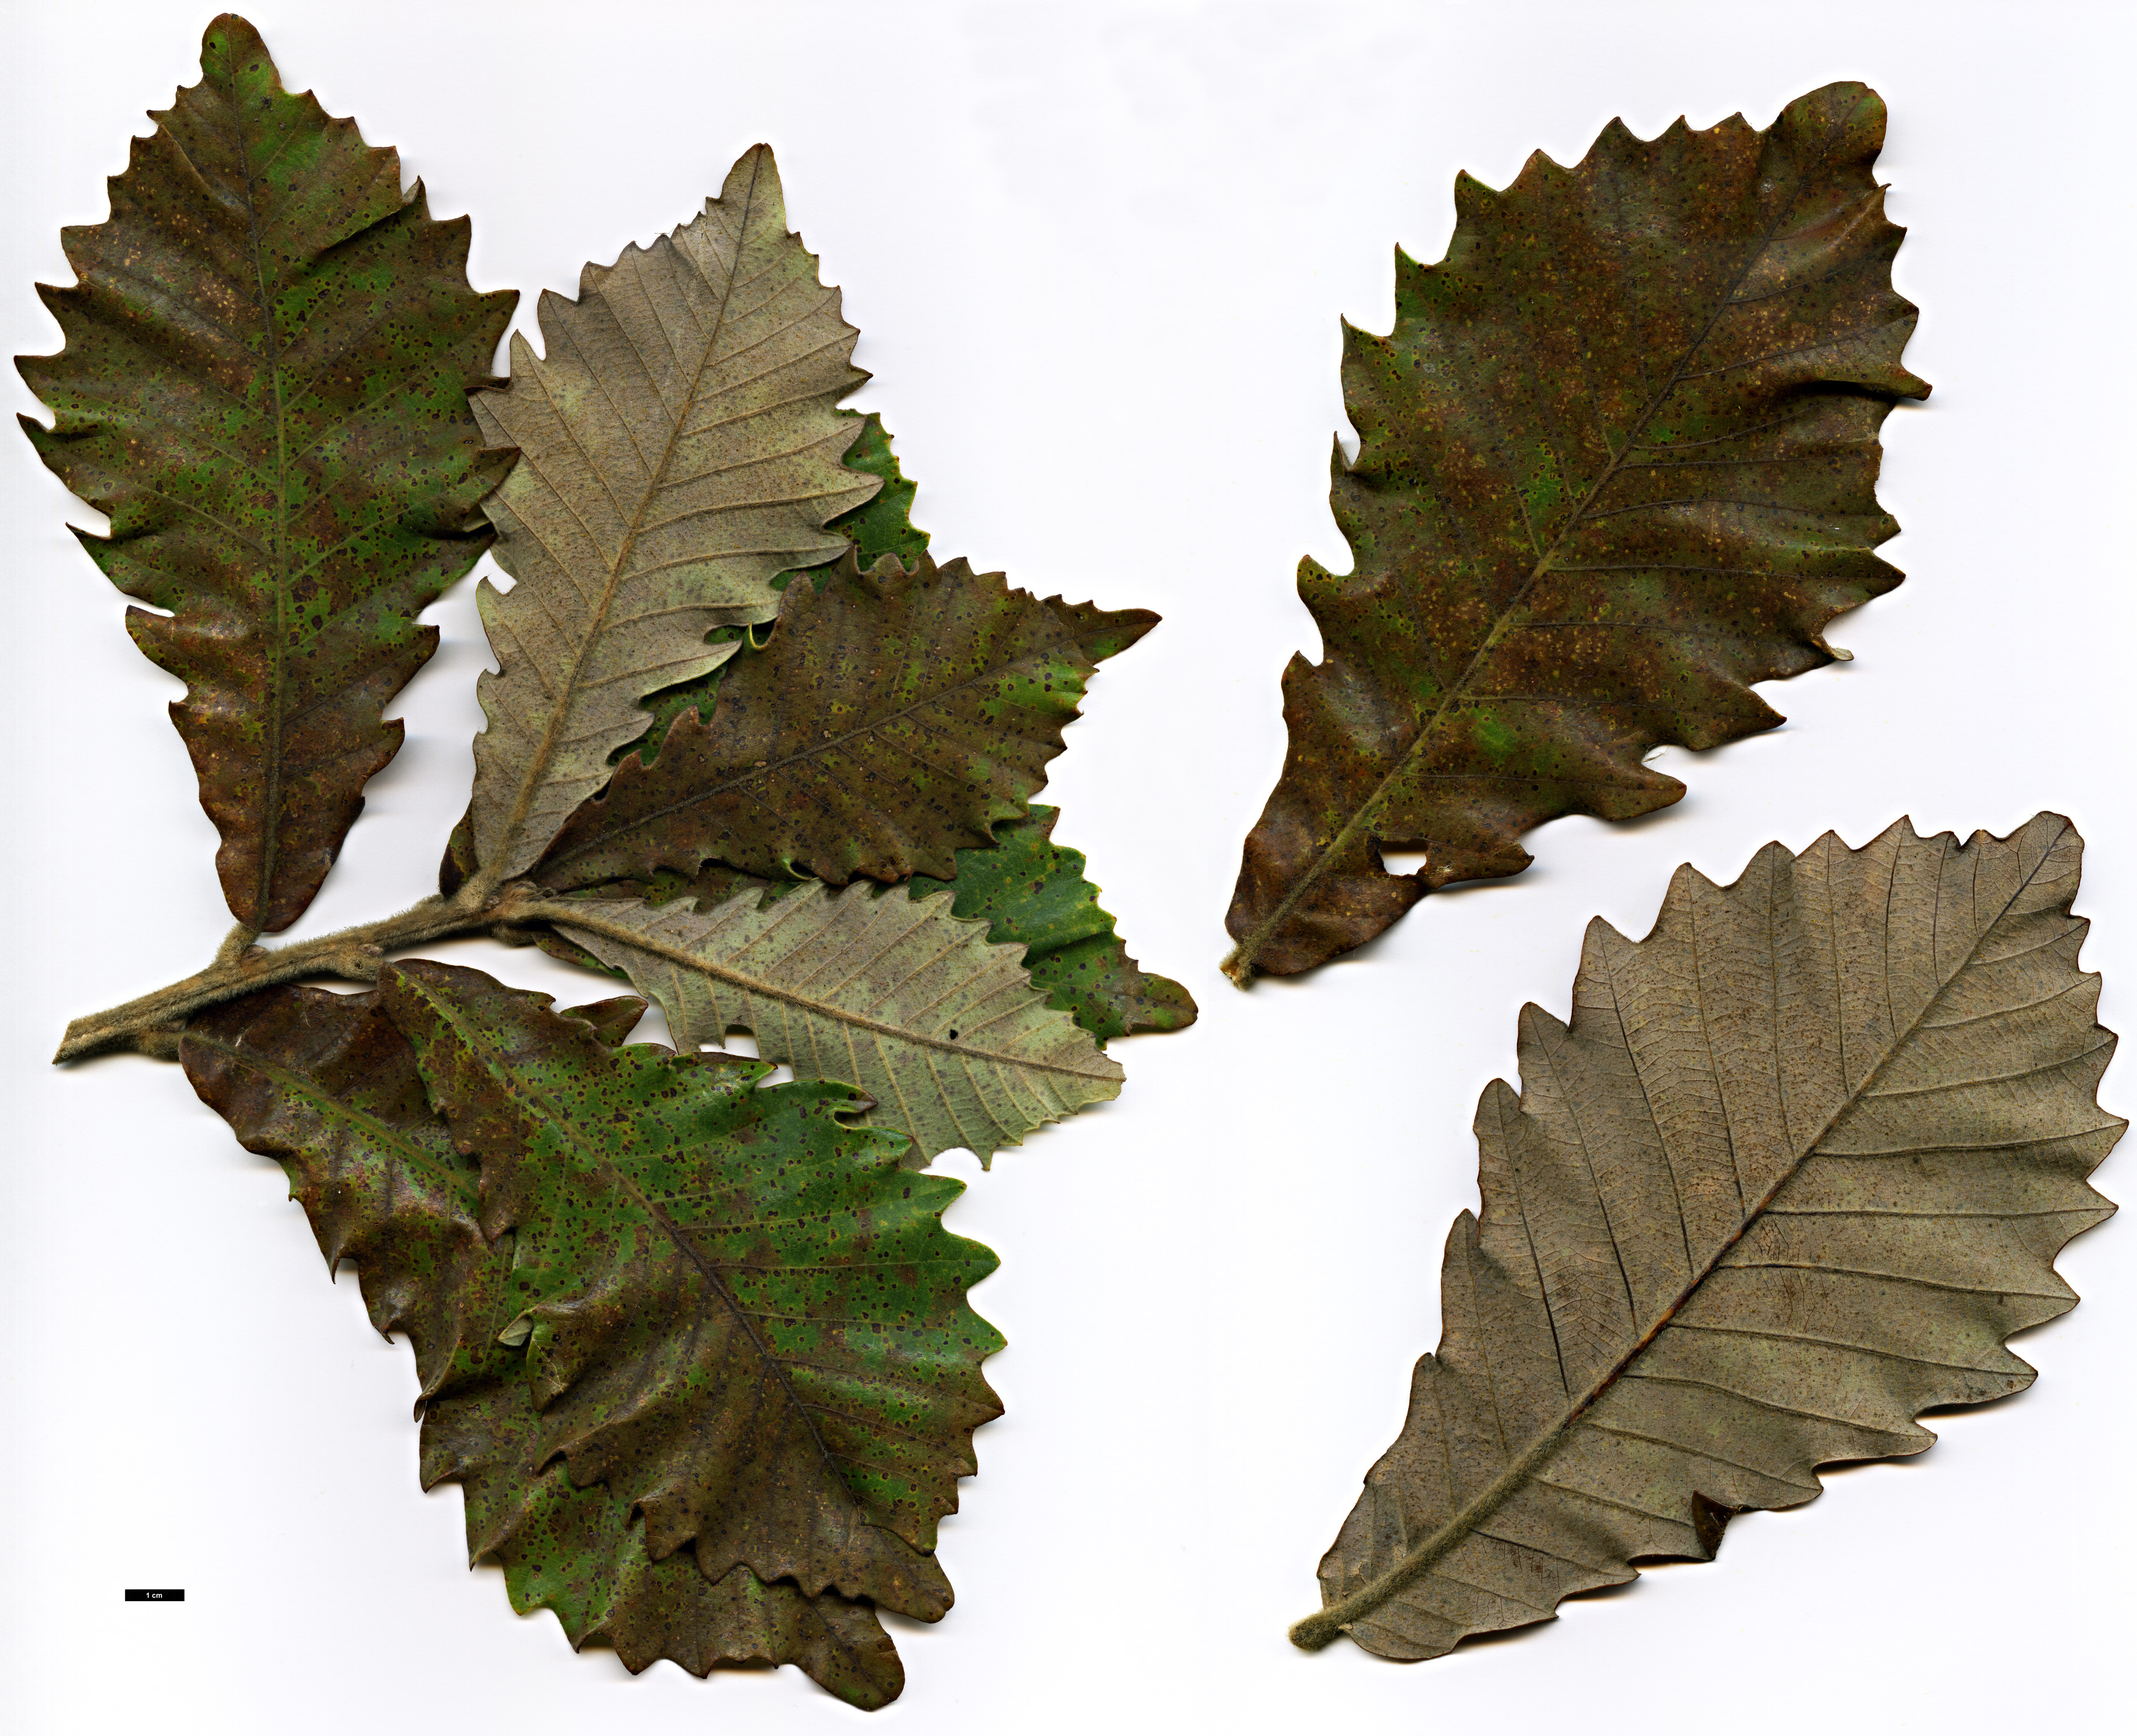 High resolution image: Family: Fagaceae - Genus: Quercus - Taxon: dentata - SpeciesSub: subsp. yunnanensis × Q.fabri